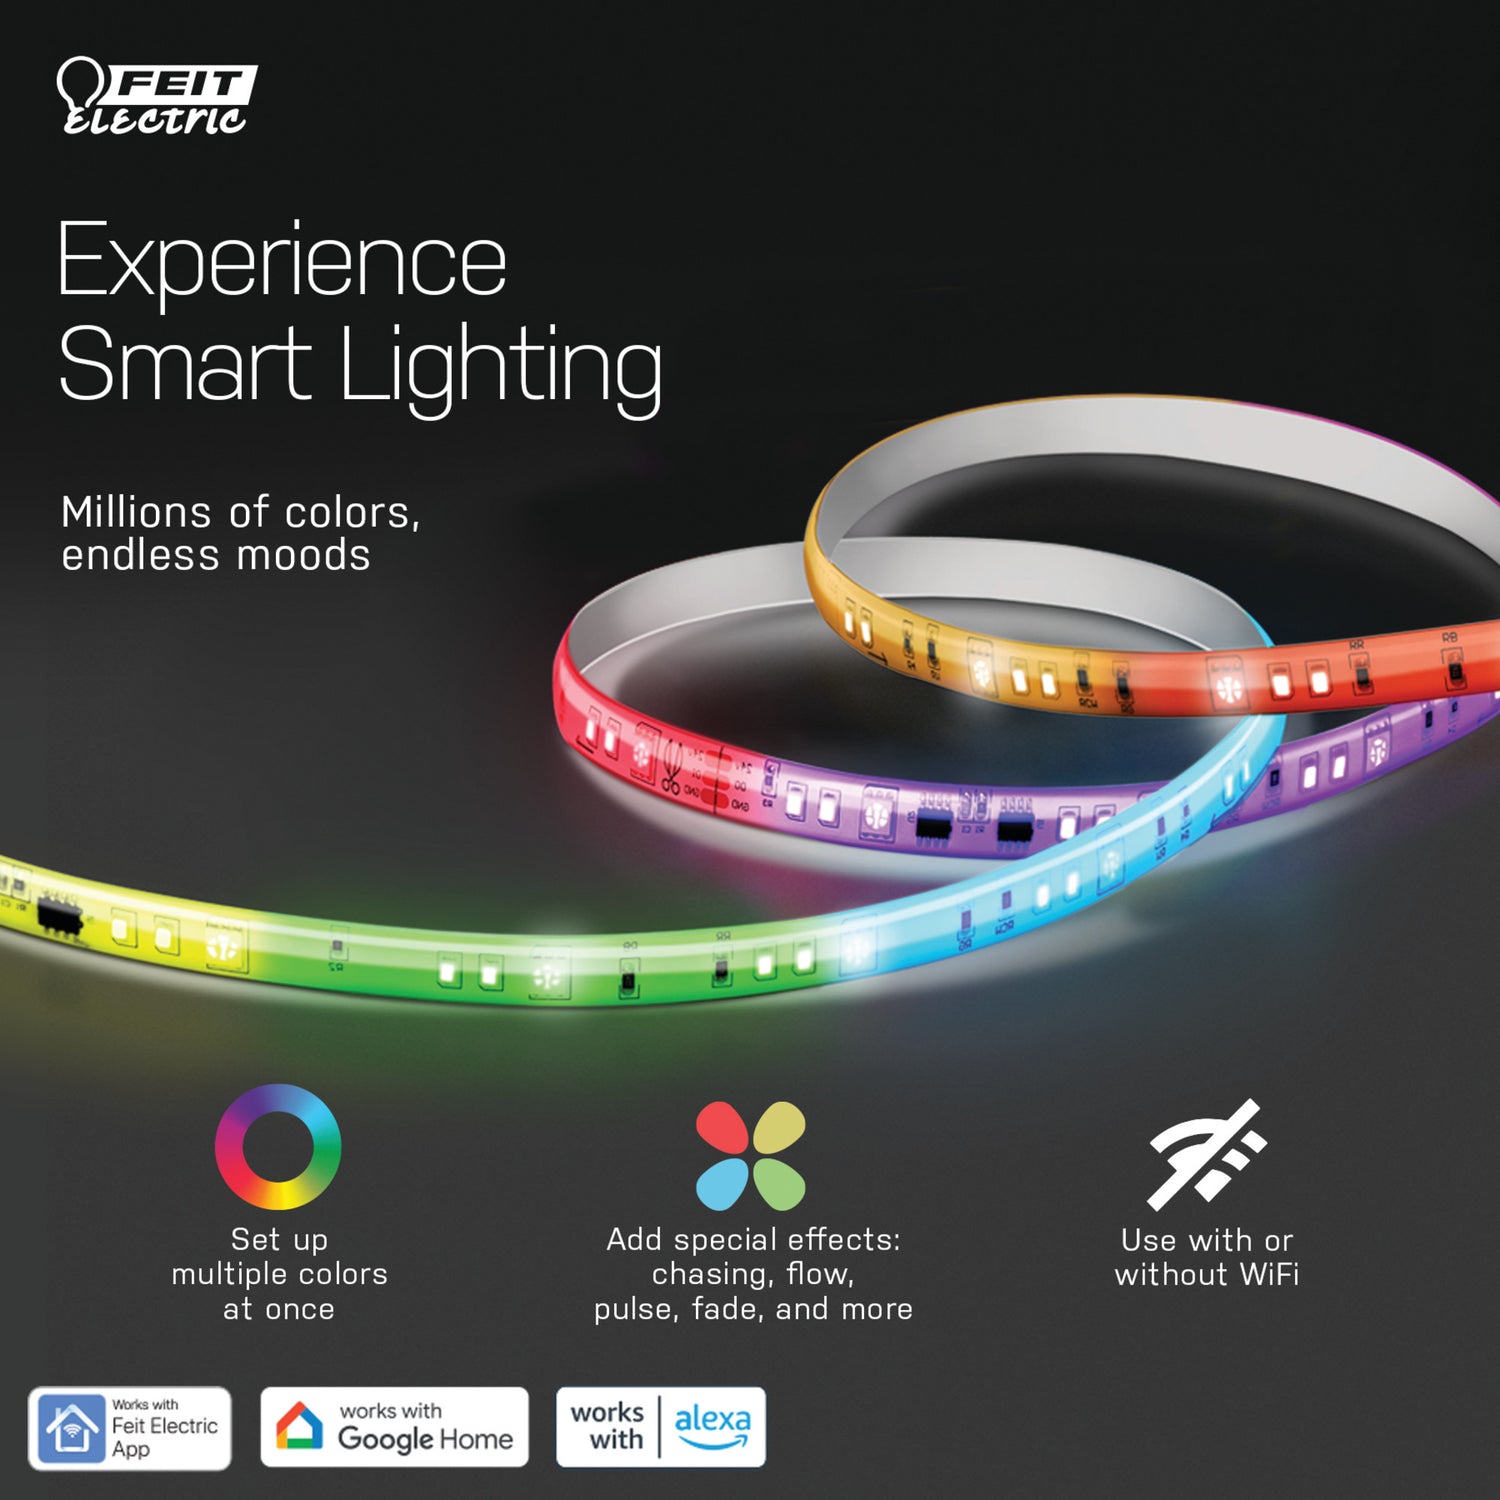 16 ft. Smart Color Chasing Strip Light